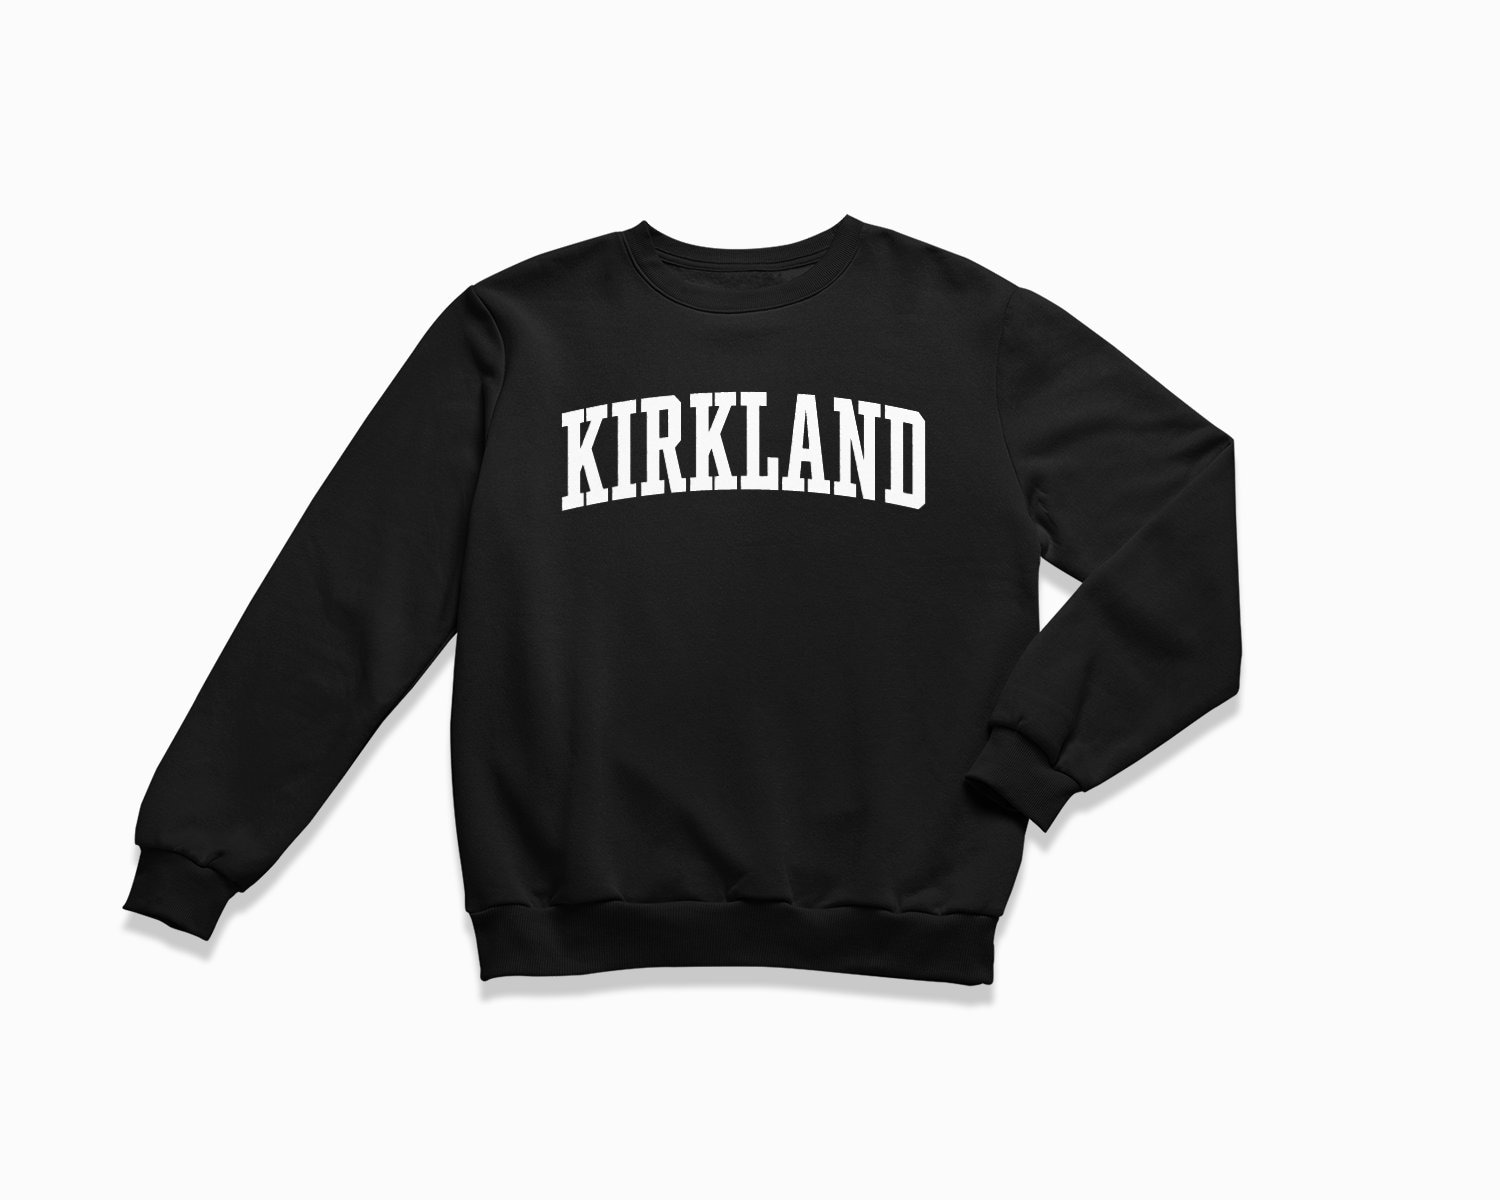 Kirkland Signature Sweatshirt For Sale - William Jacket